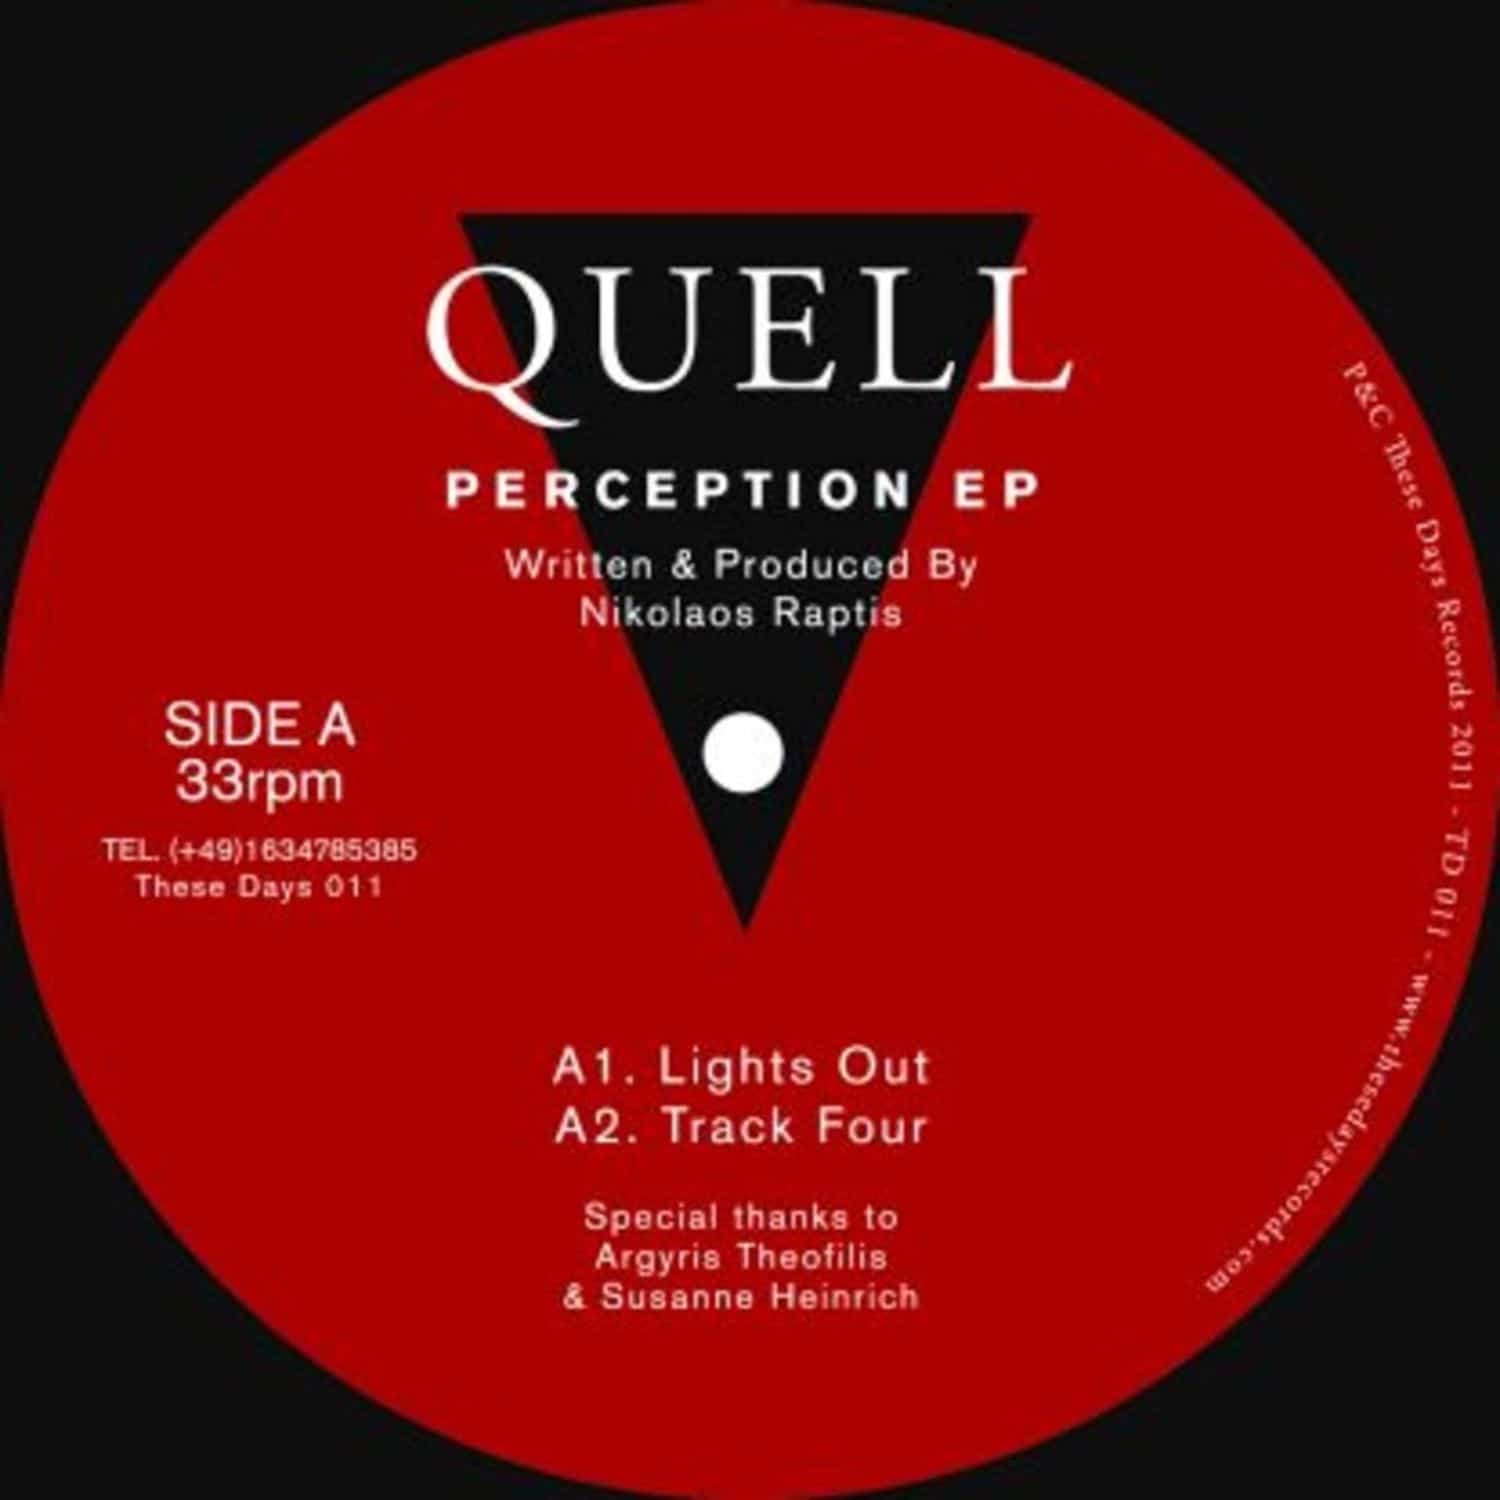 Quell - PERCEPTION EP